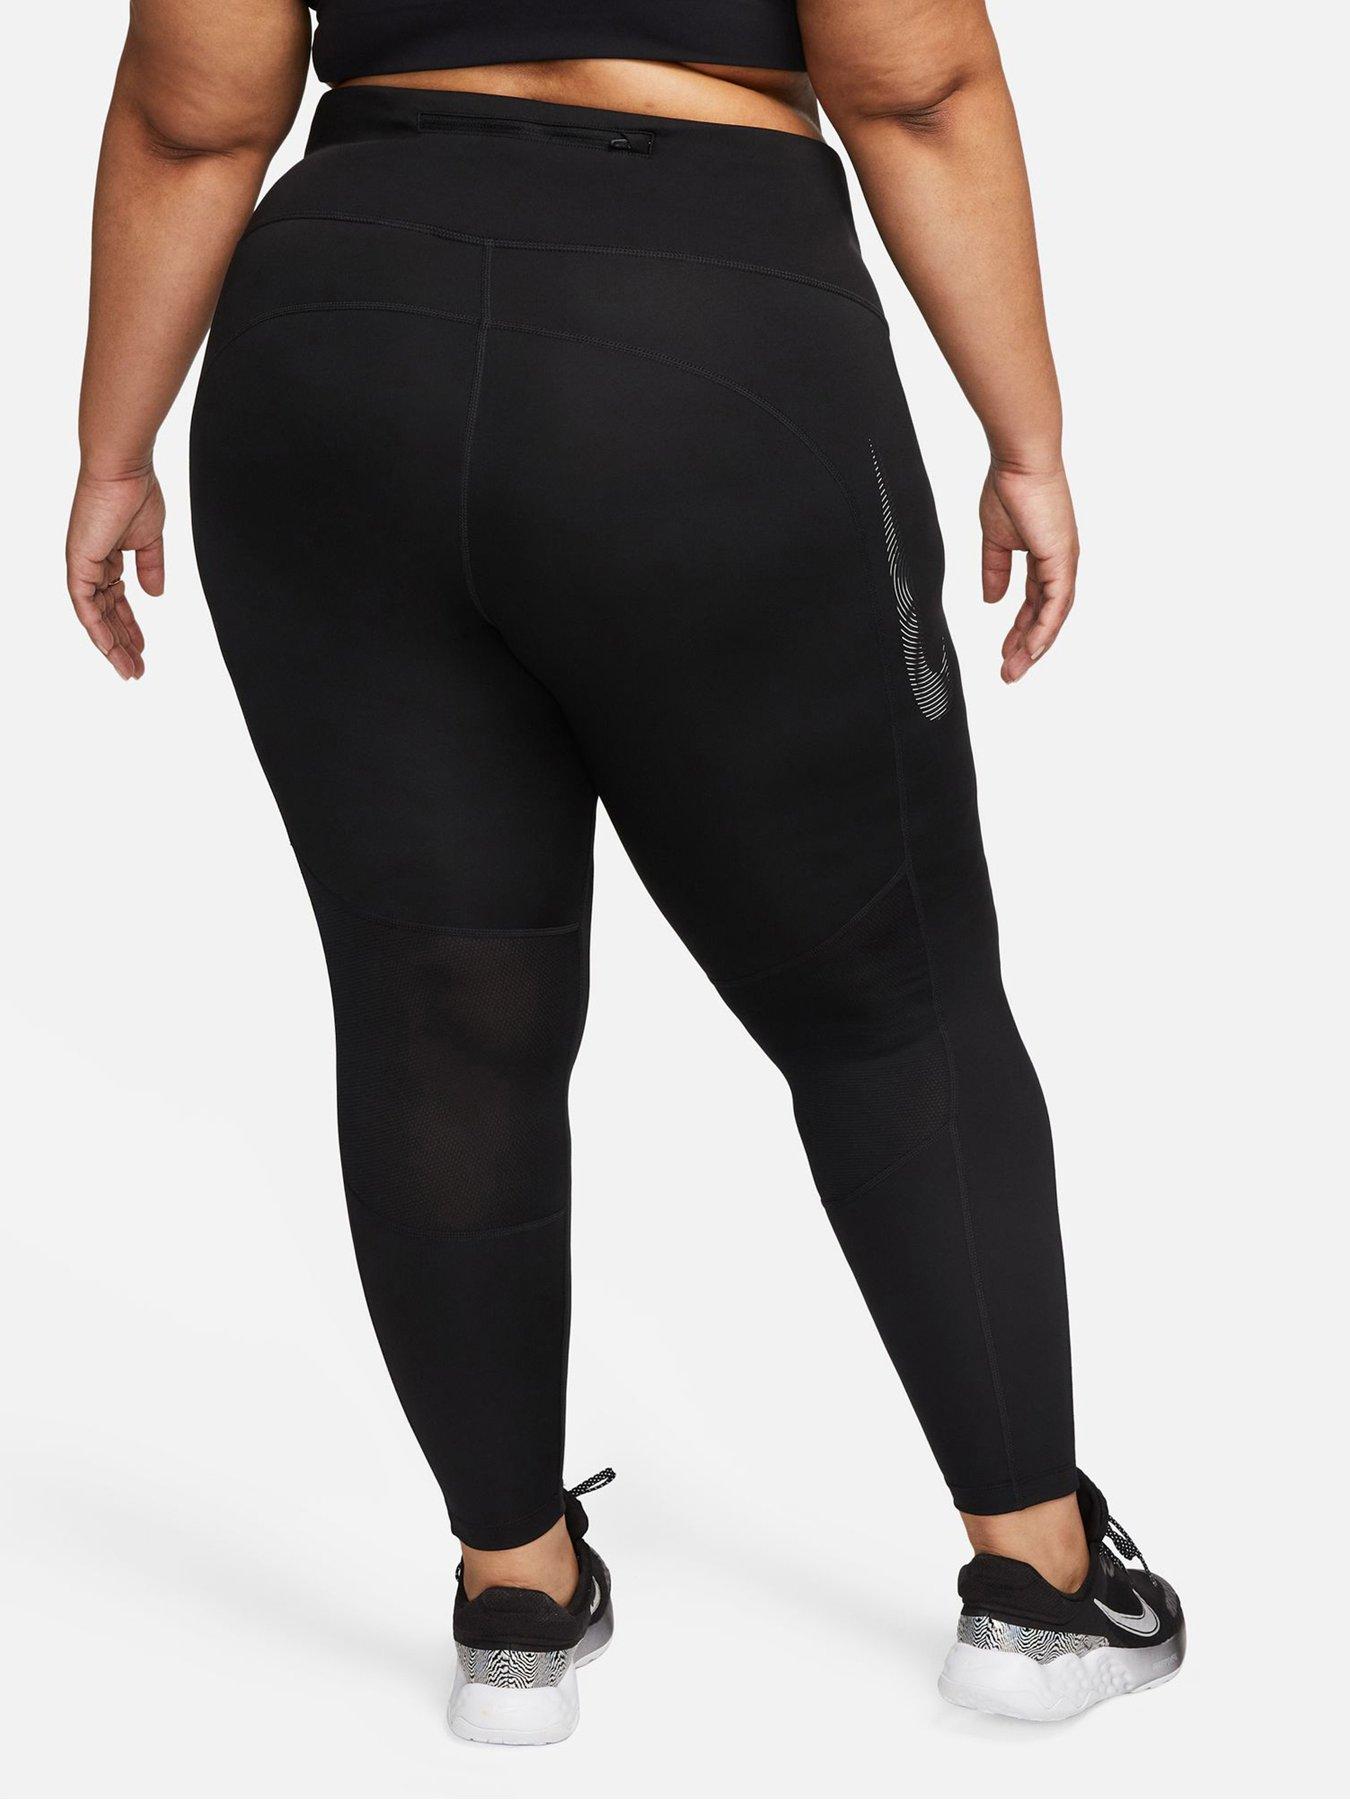 Nike Fast Women's Mid-Rise 7/8 Leggings - Black (Curve)